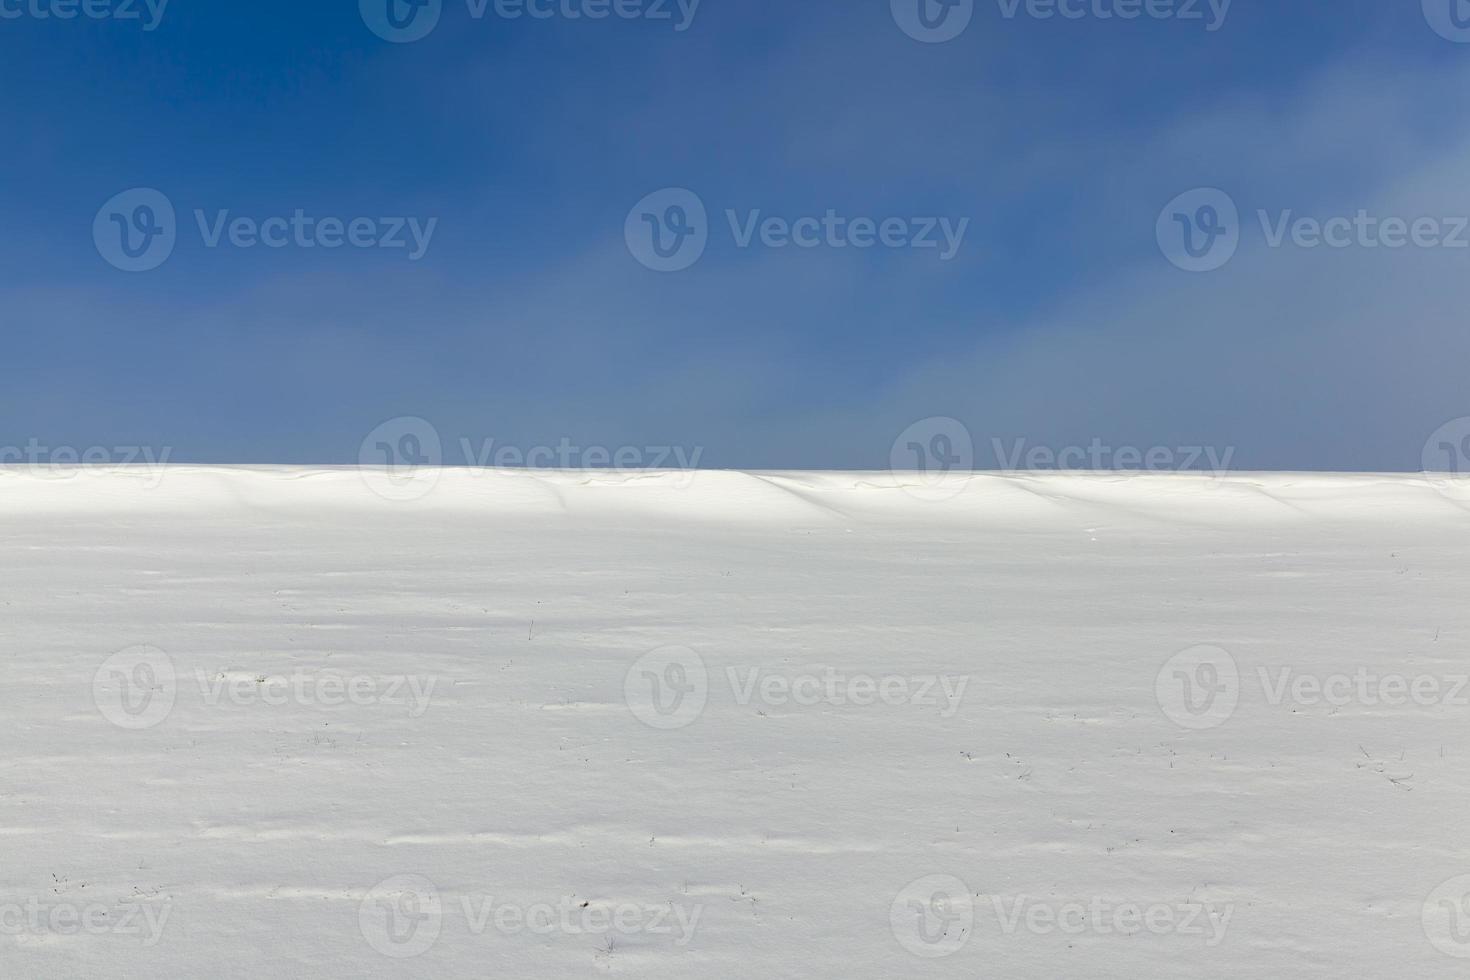 congères de neige en hiver photo